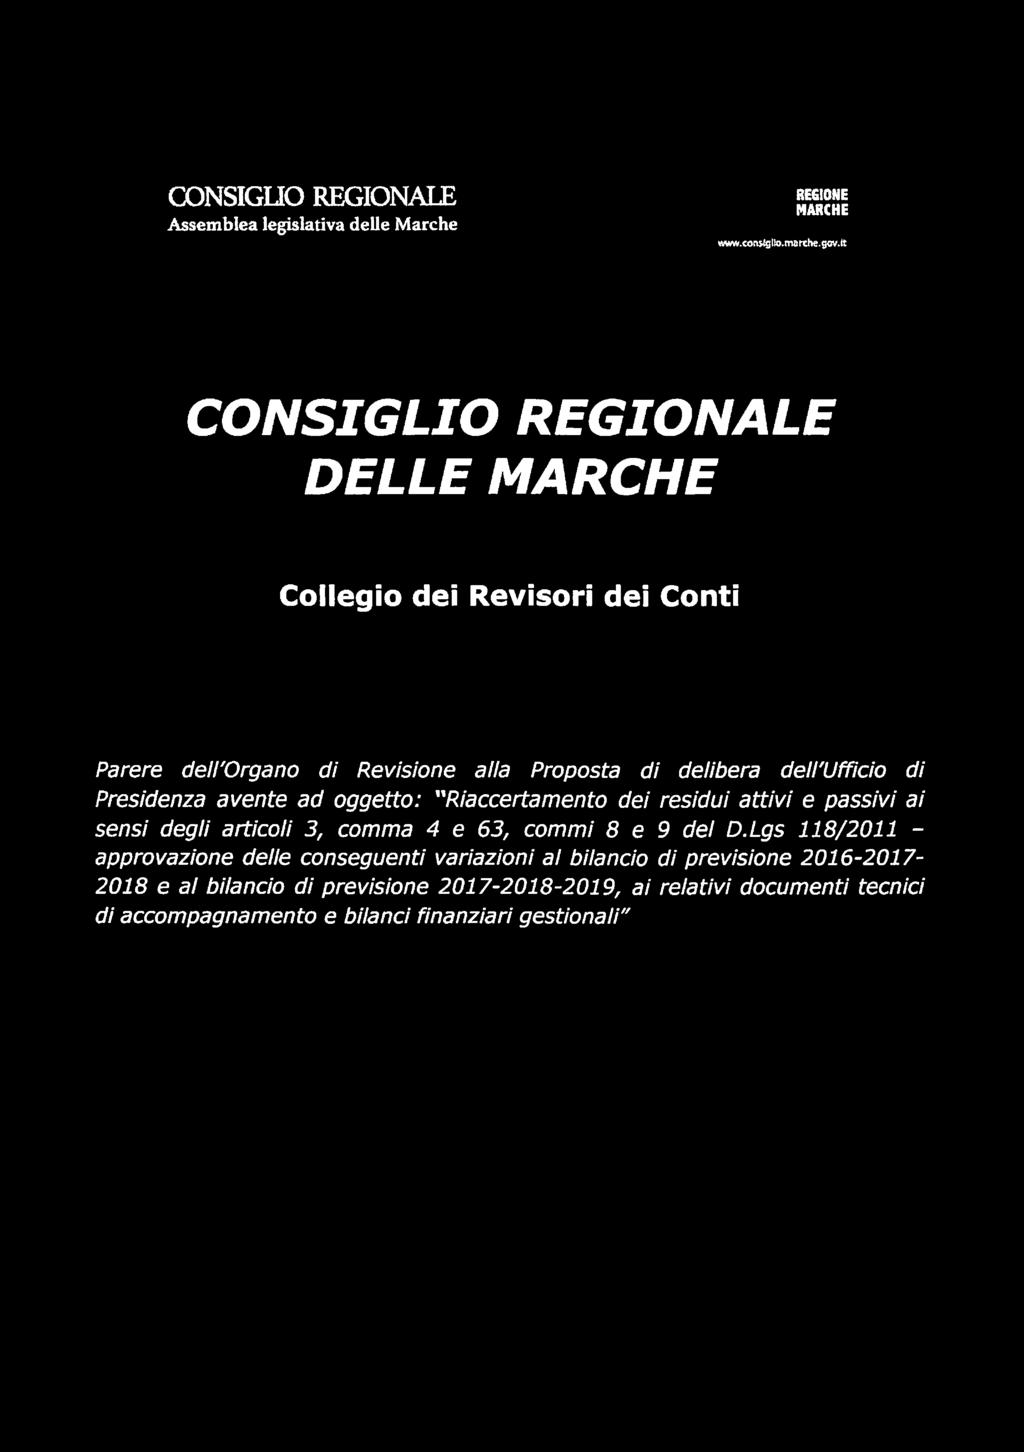 CONSIGLIO REGIONALE Assemblea legislativa delle Marche REGIONE MARCHE www.tonsigto.nrarche.ffw.